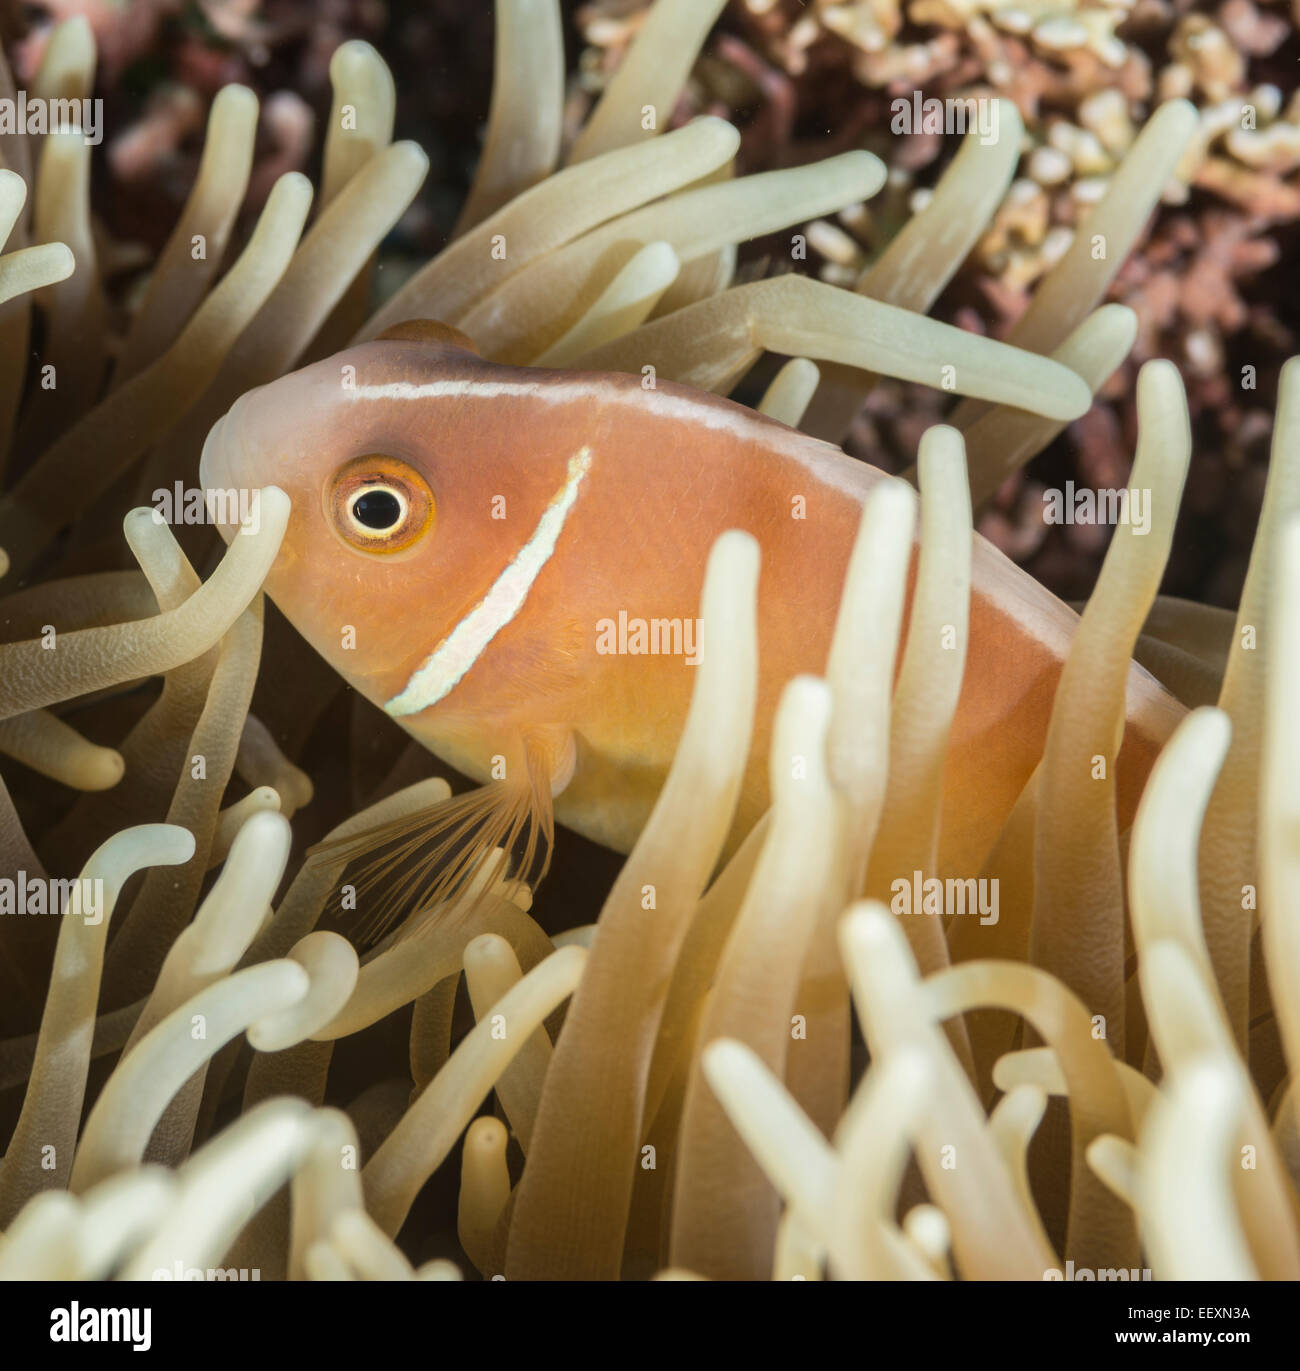 Rosa Anemonenfische versteckt in einer anemone Stockfoto